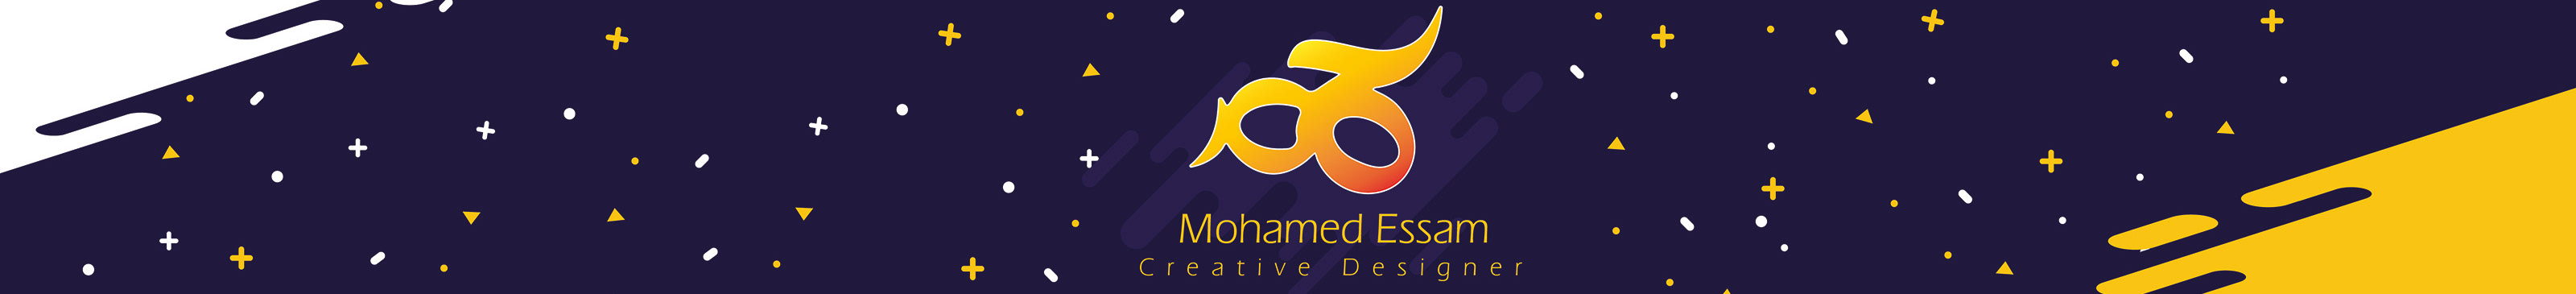 Mohamed Essam's profile banner